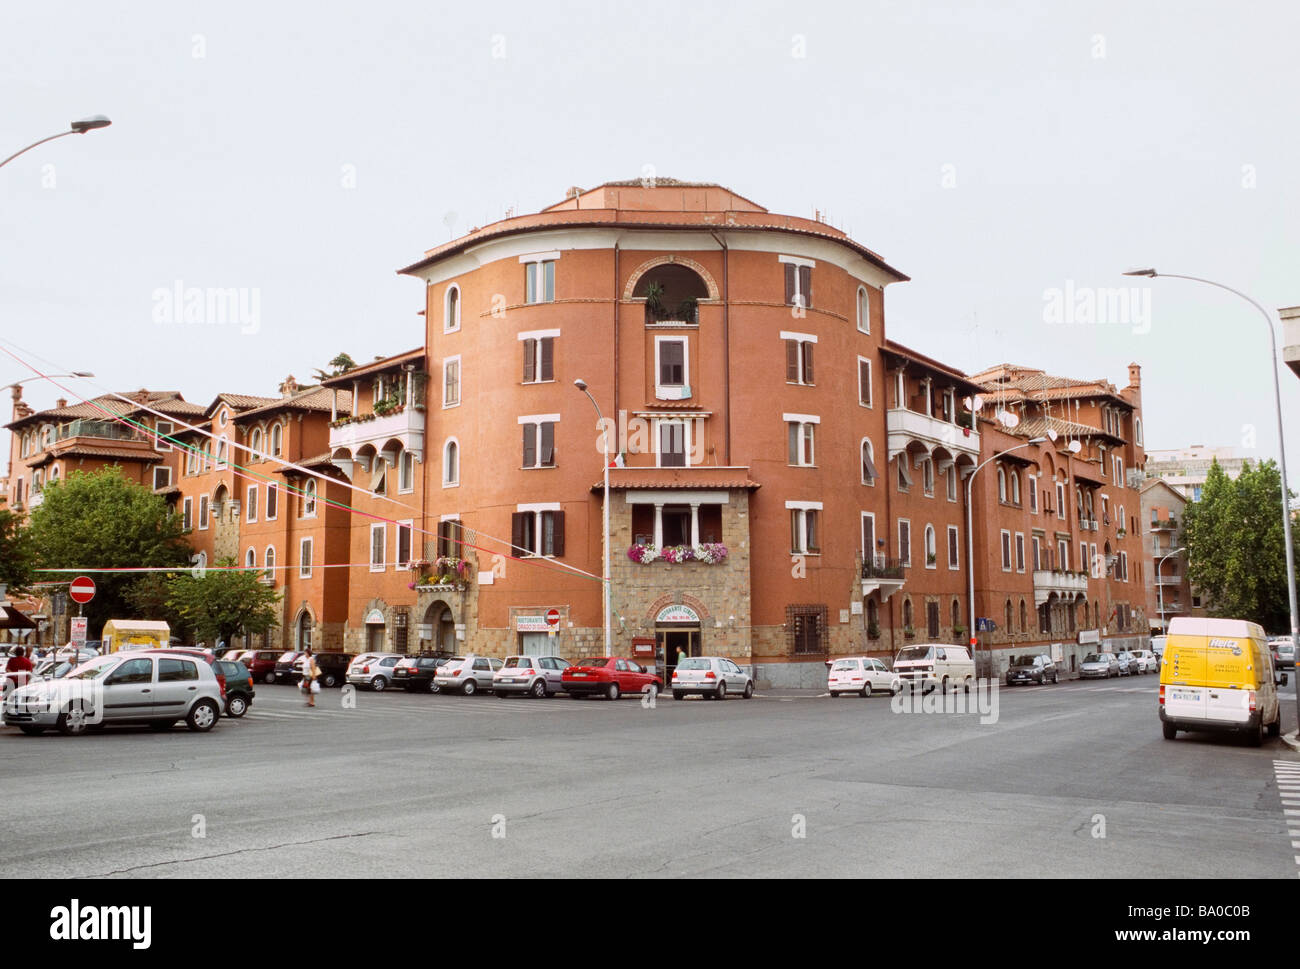 Lotto 8 of the Garbatella district in Rome Stock Photo - Alamy